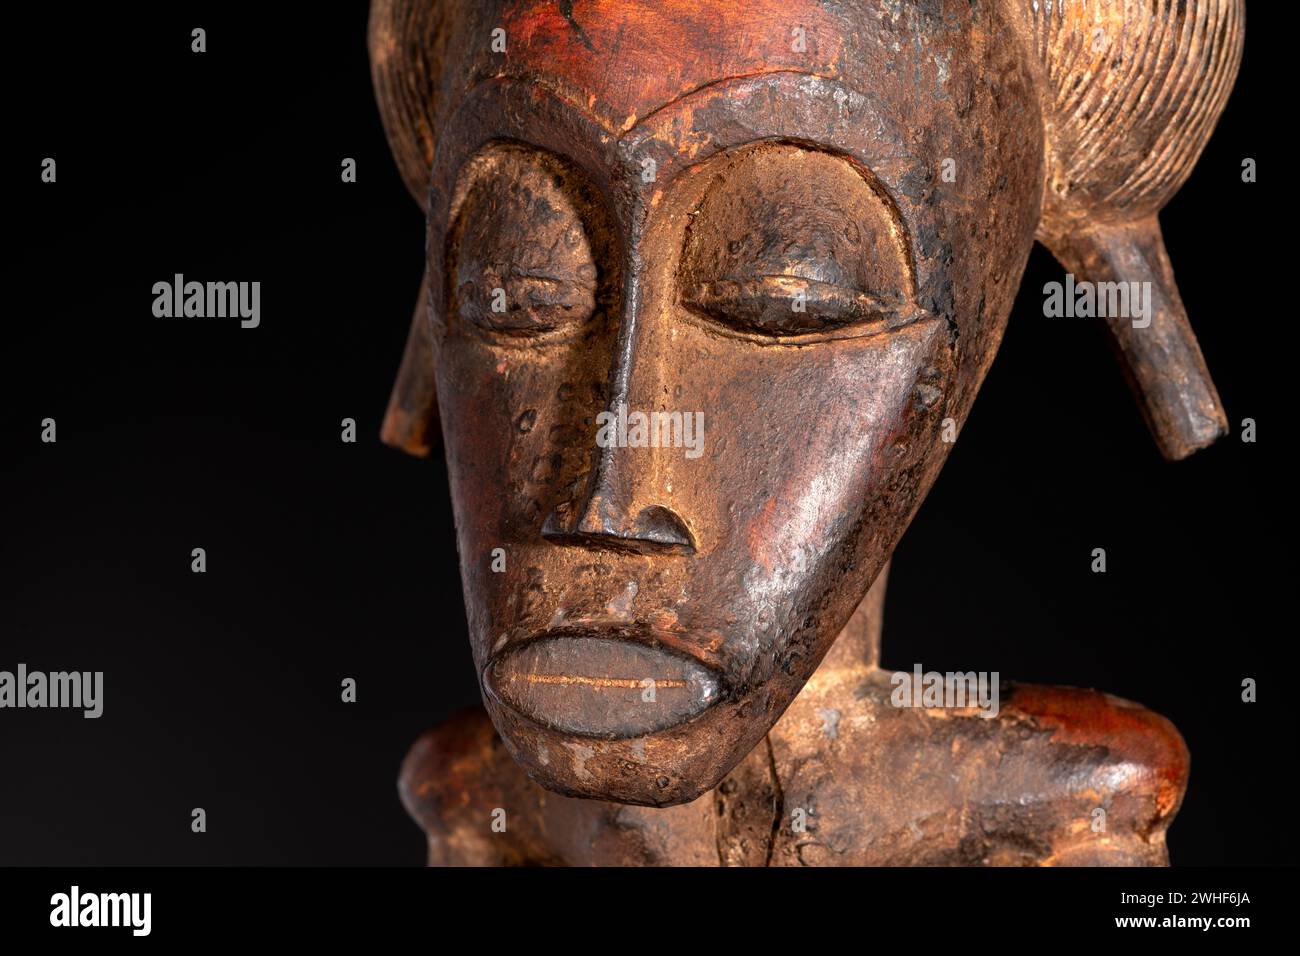 Nahaufnahme einer hölzernen Senufo männlichen Figur aus der Elfenbeinküste. Afrikanische Kunst mit meisterhafter Handwerkskunst und spirituellem Symbolismus. Stockfoto